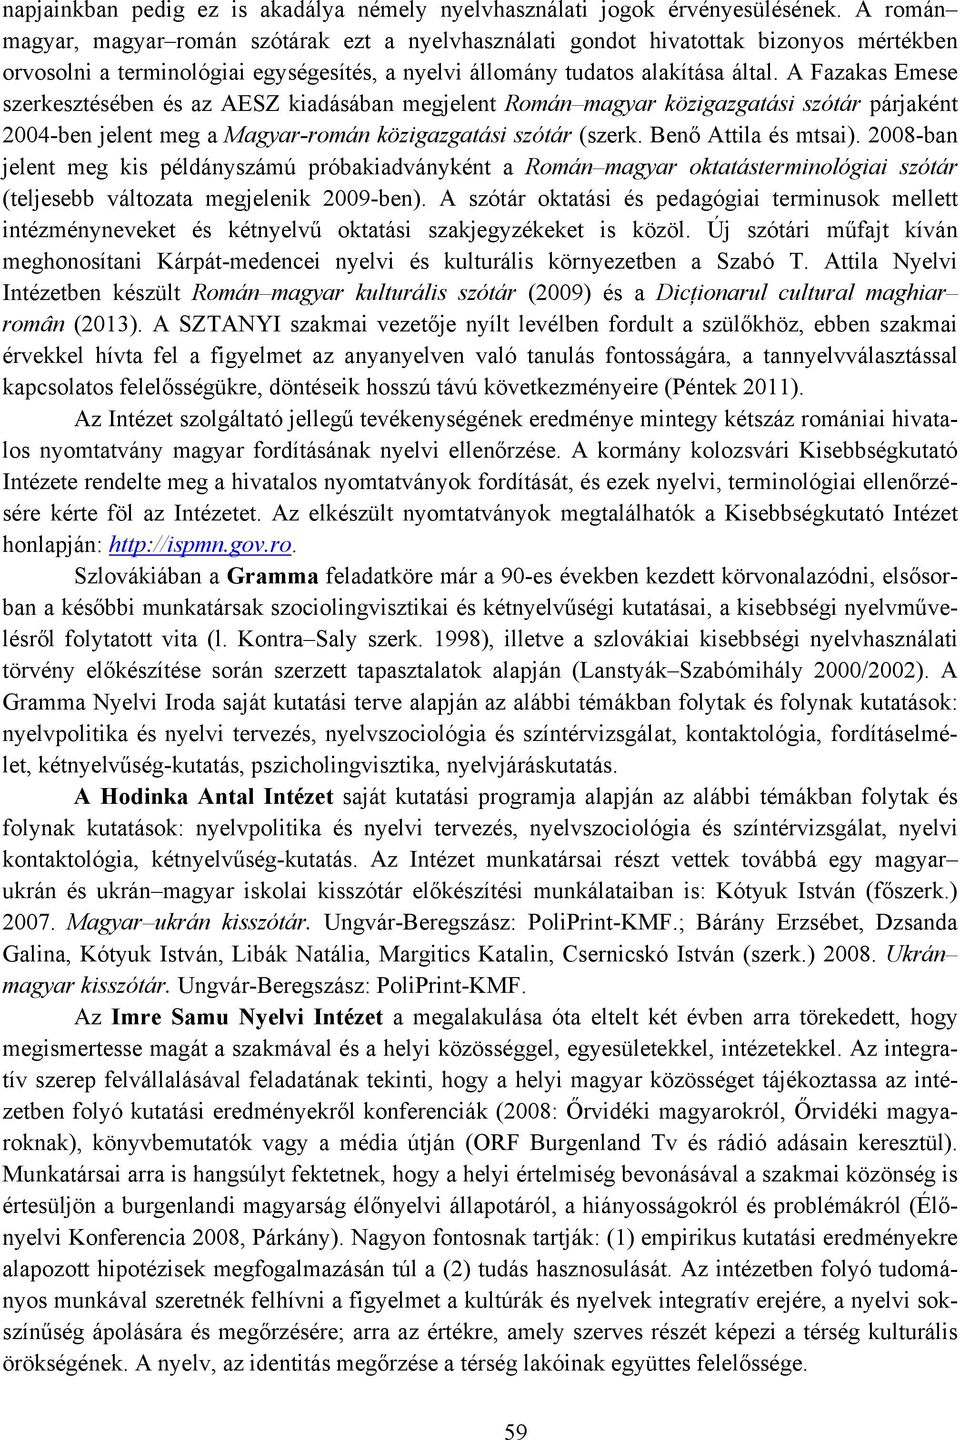 A Fazakas Emese szerkesztésében és az AESZ kiadásában megjelent Román magyar közigazgatási szótár párjaként 2004-ben jelent meg a Magyar-román közigazgatási szótár (szerk. Benő Attila és mtsai).